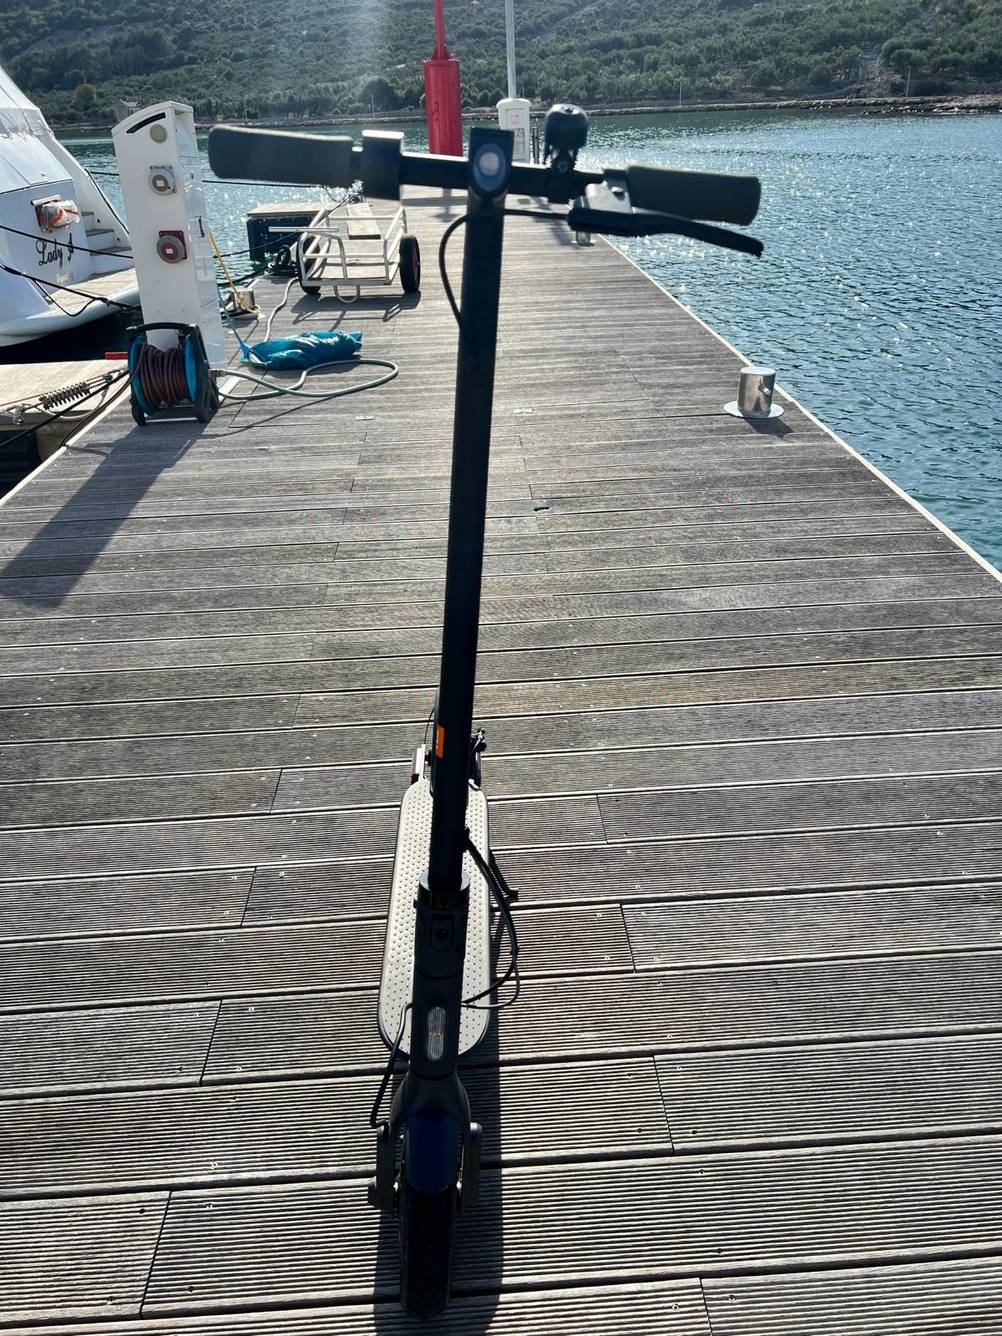 Getesteter Elektroroller inklusive Klingel von vorn auf einem Bootssteg.